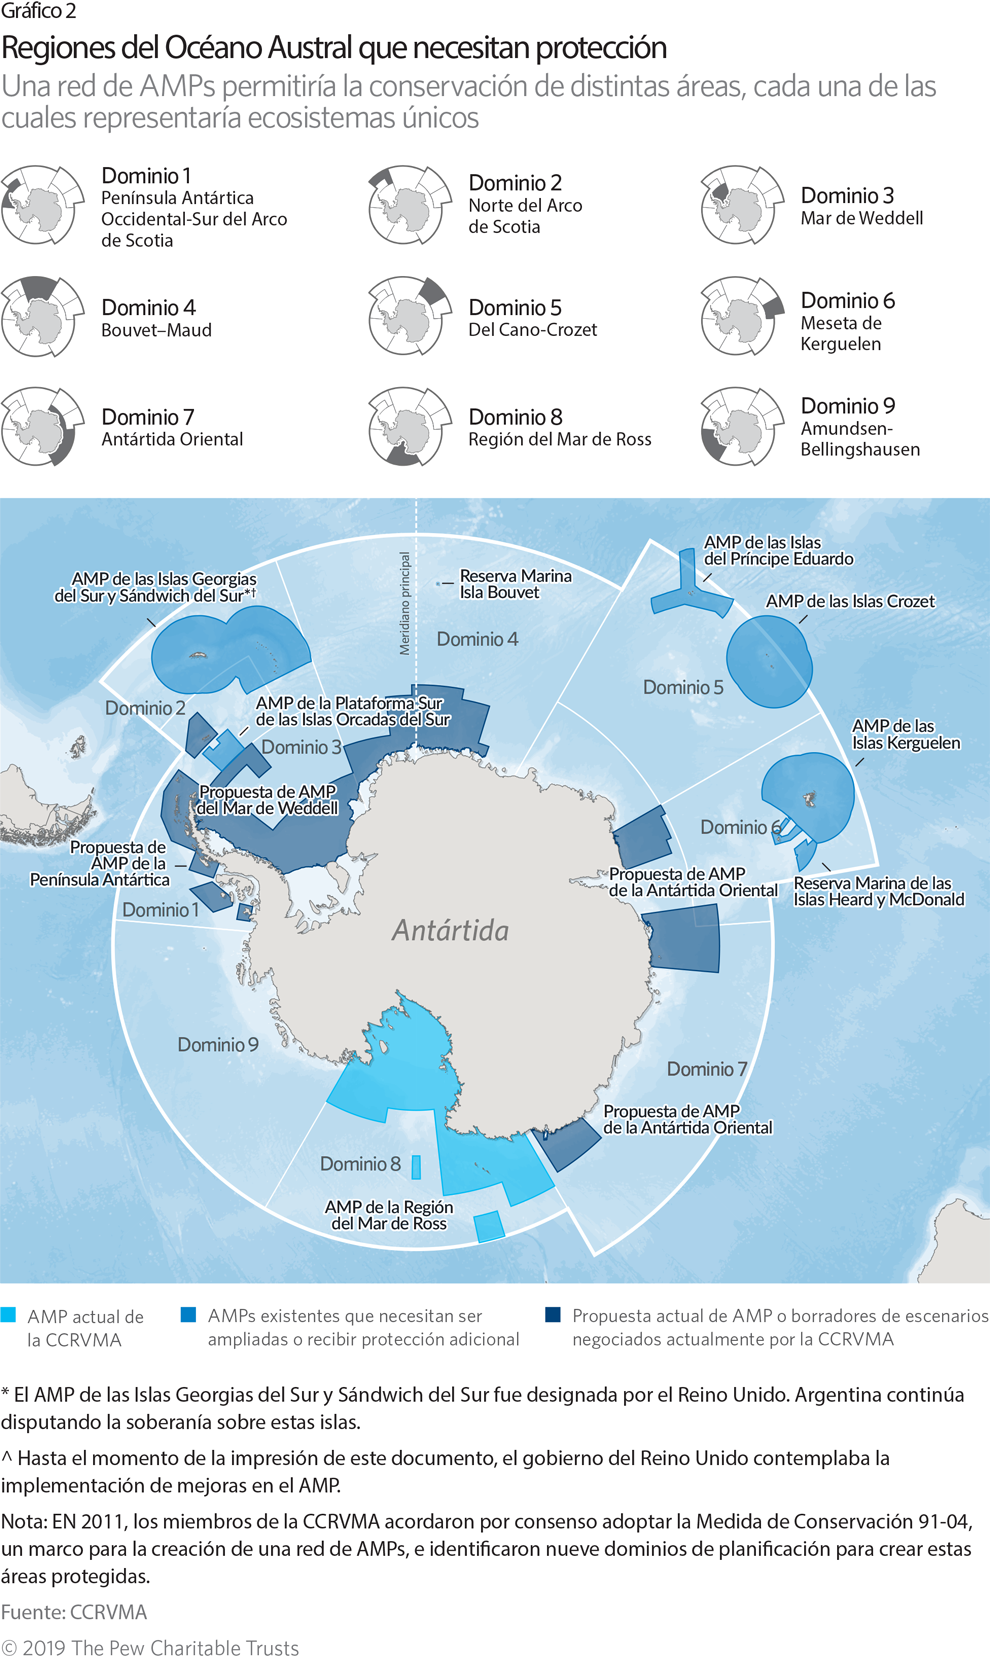 Una red de áreas marinas protegidas en el Océano Austral | The Pew ...